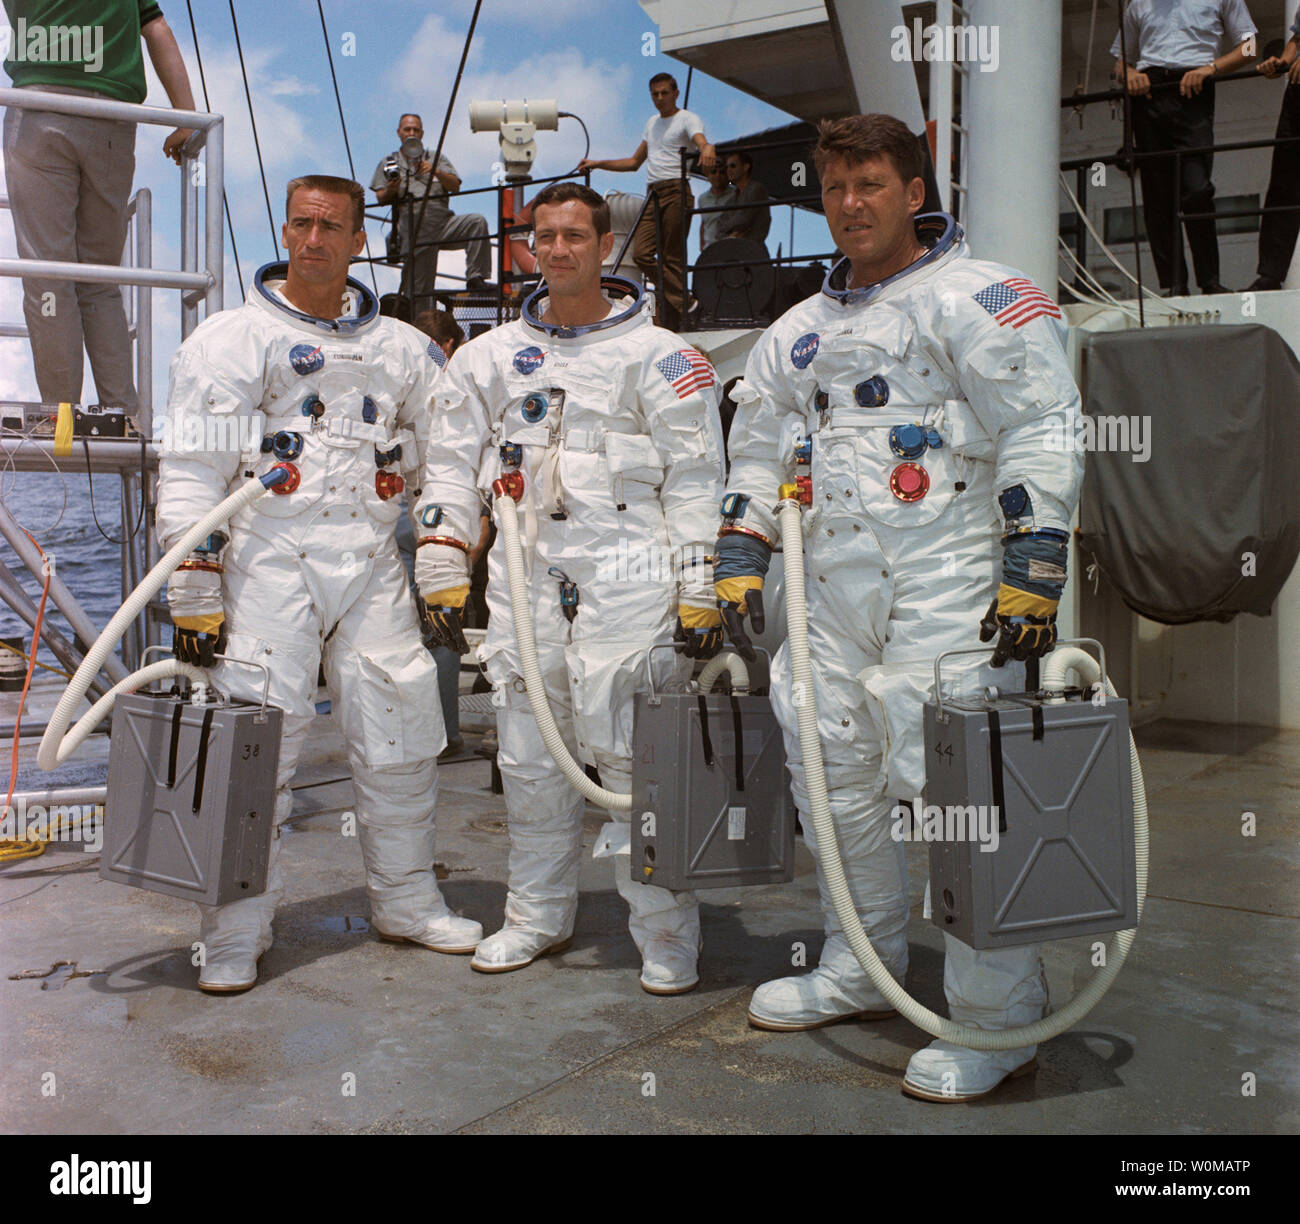 Astronauta Wally Schirra, uno l'originale Mercury sette astronauti, morì all età di 84 a San Diego il 2 maggio 2007. Schirra era l'unico astronauta a volare in mercurio, Gemini e Apollo programmi spaziali. Egli è come mostrato nella figura a destra con Apollo 7 membri di equipaggio Donn Eisele (C) e Walter Cunningham (L) nel 1967. (UPI foto/NASA/file) Foto Stock